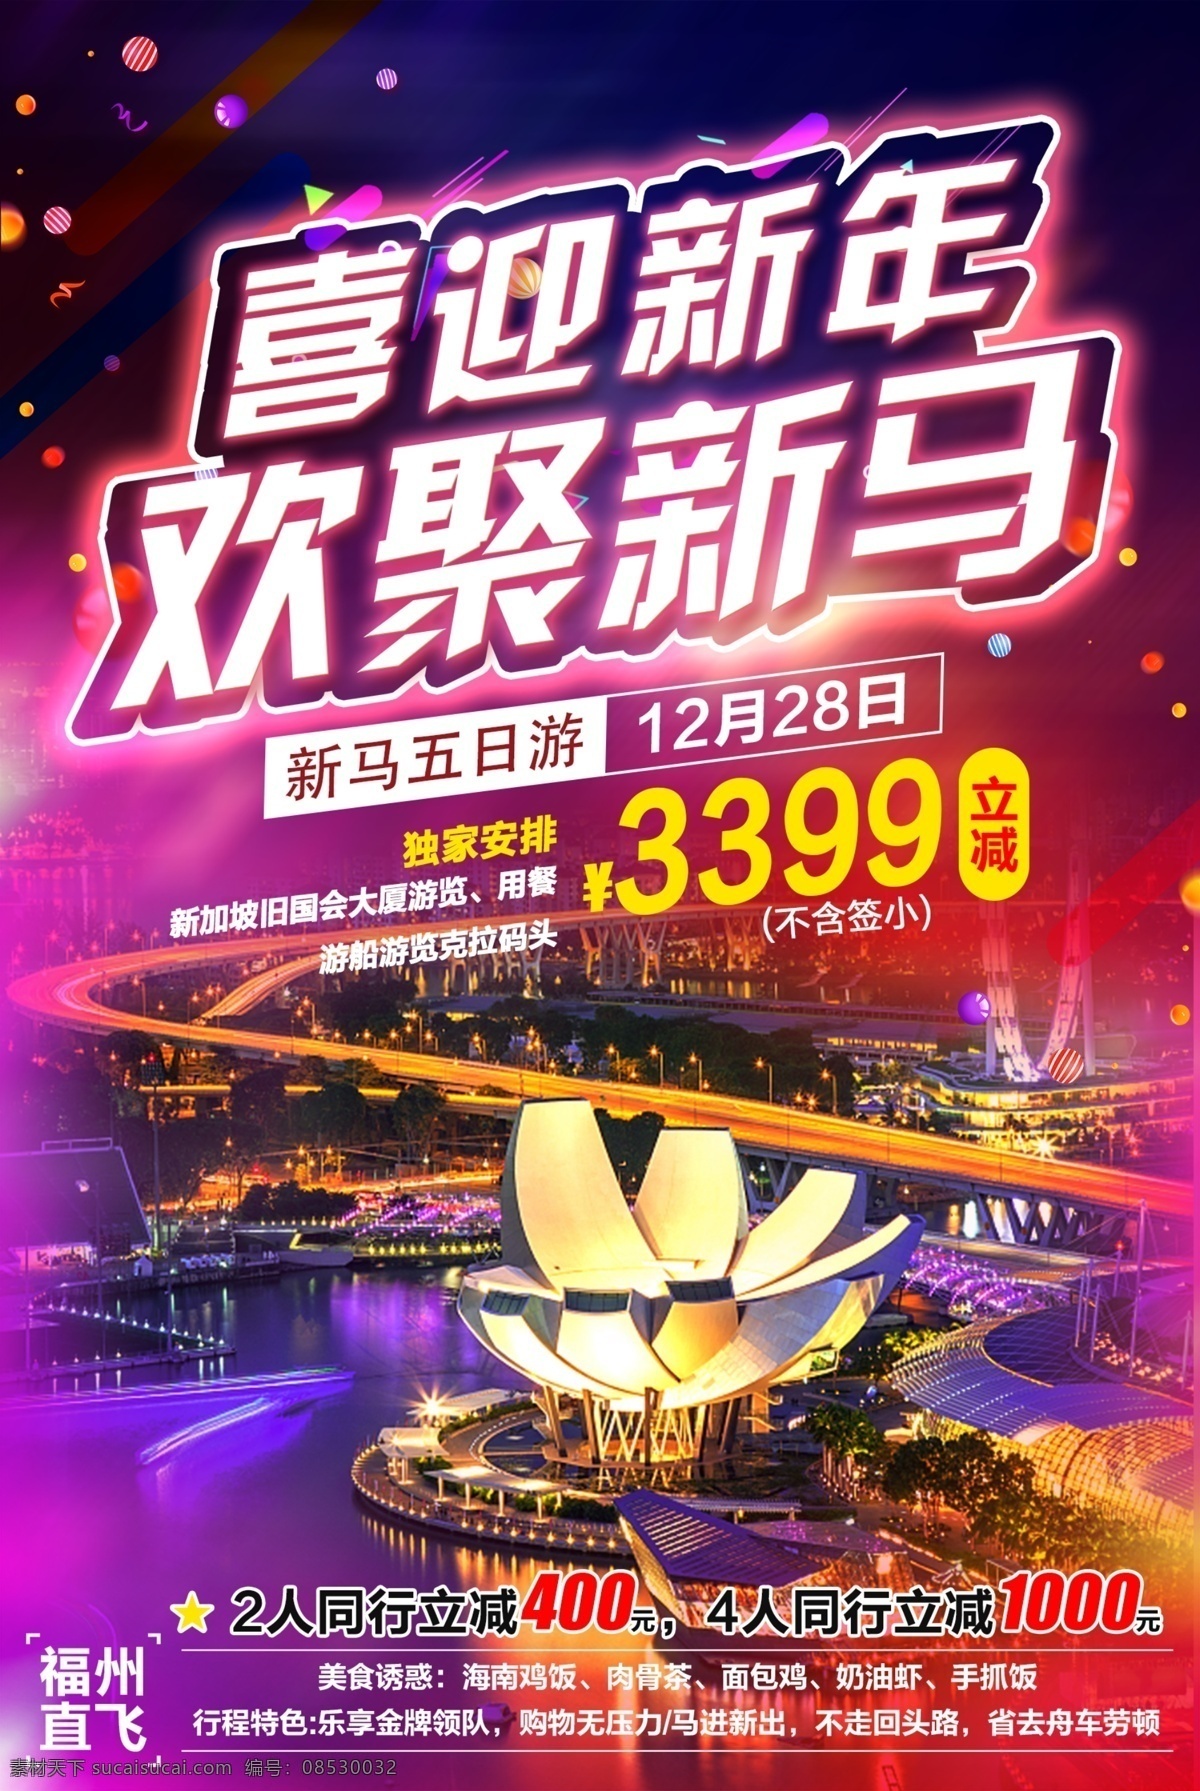 新马 新年 旅游 海报 立减 马来西亚 新加坡